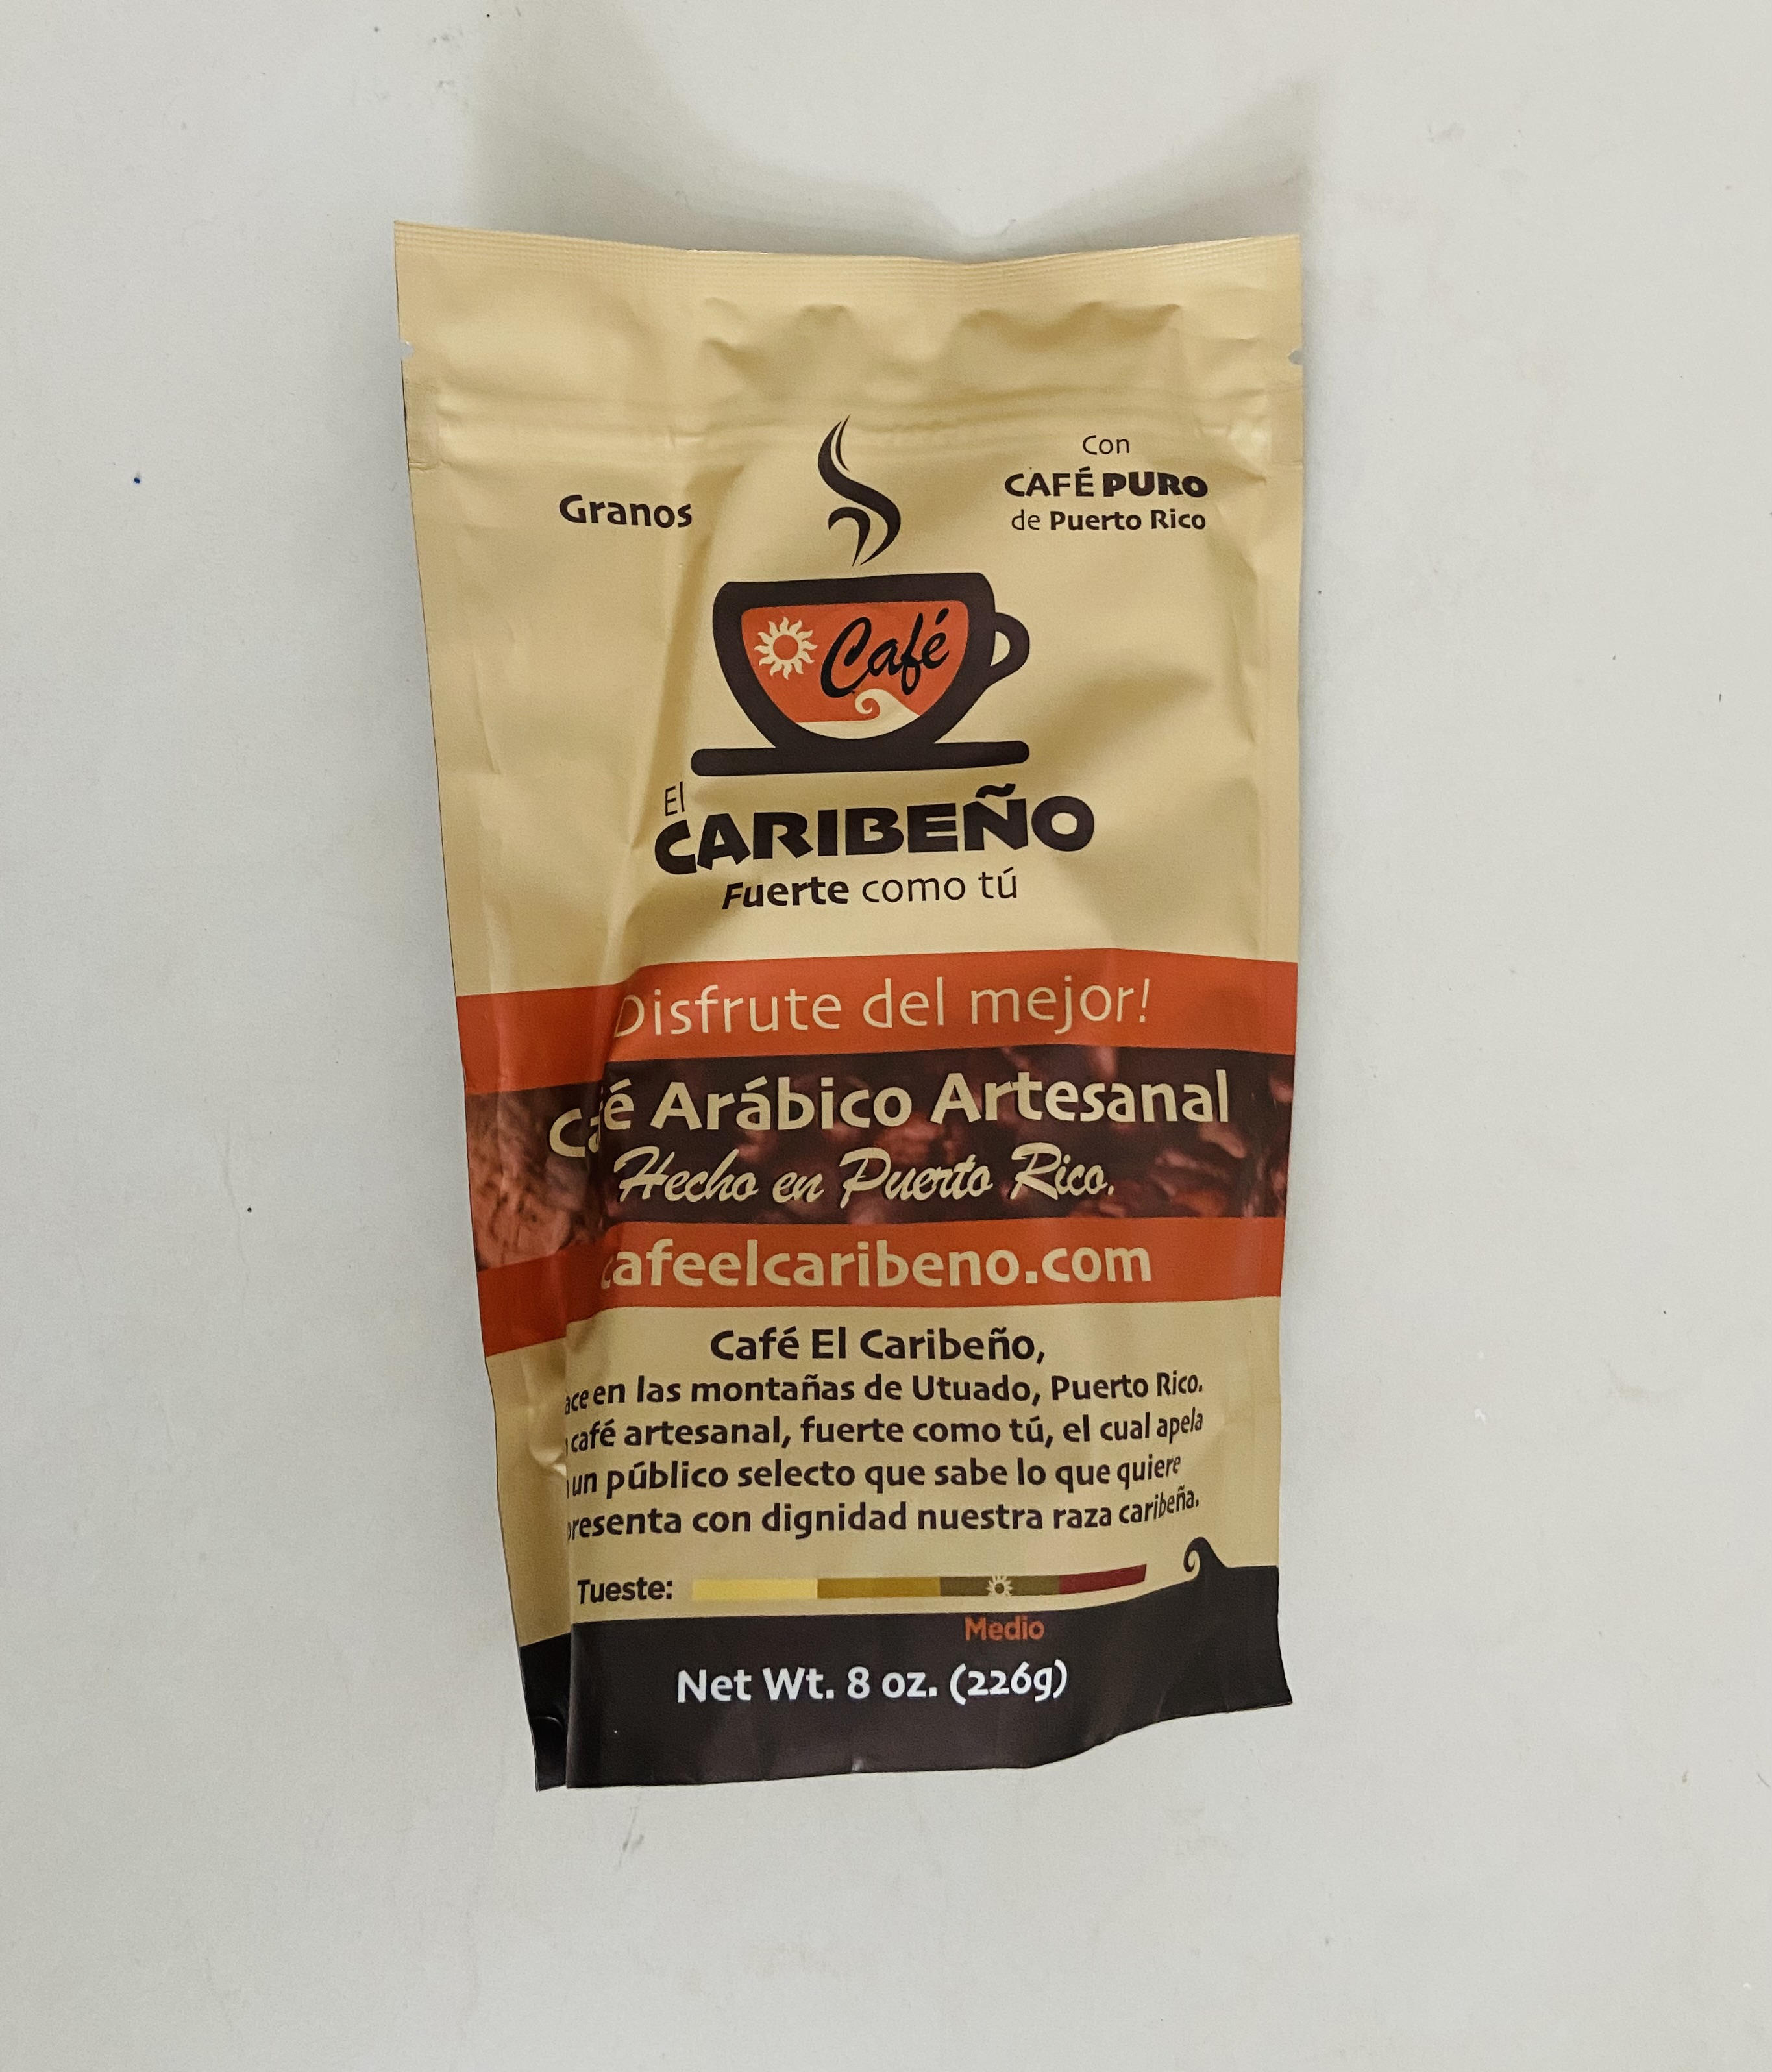 El Caribeño Café Grano 100% Puro 8oz - image 1 of 1